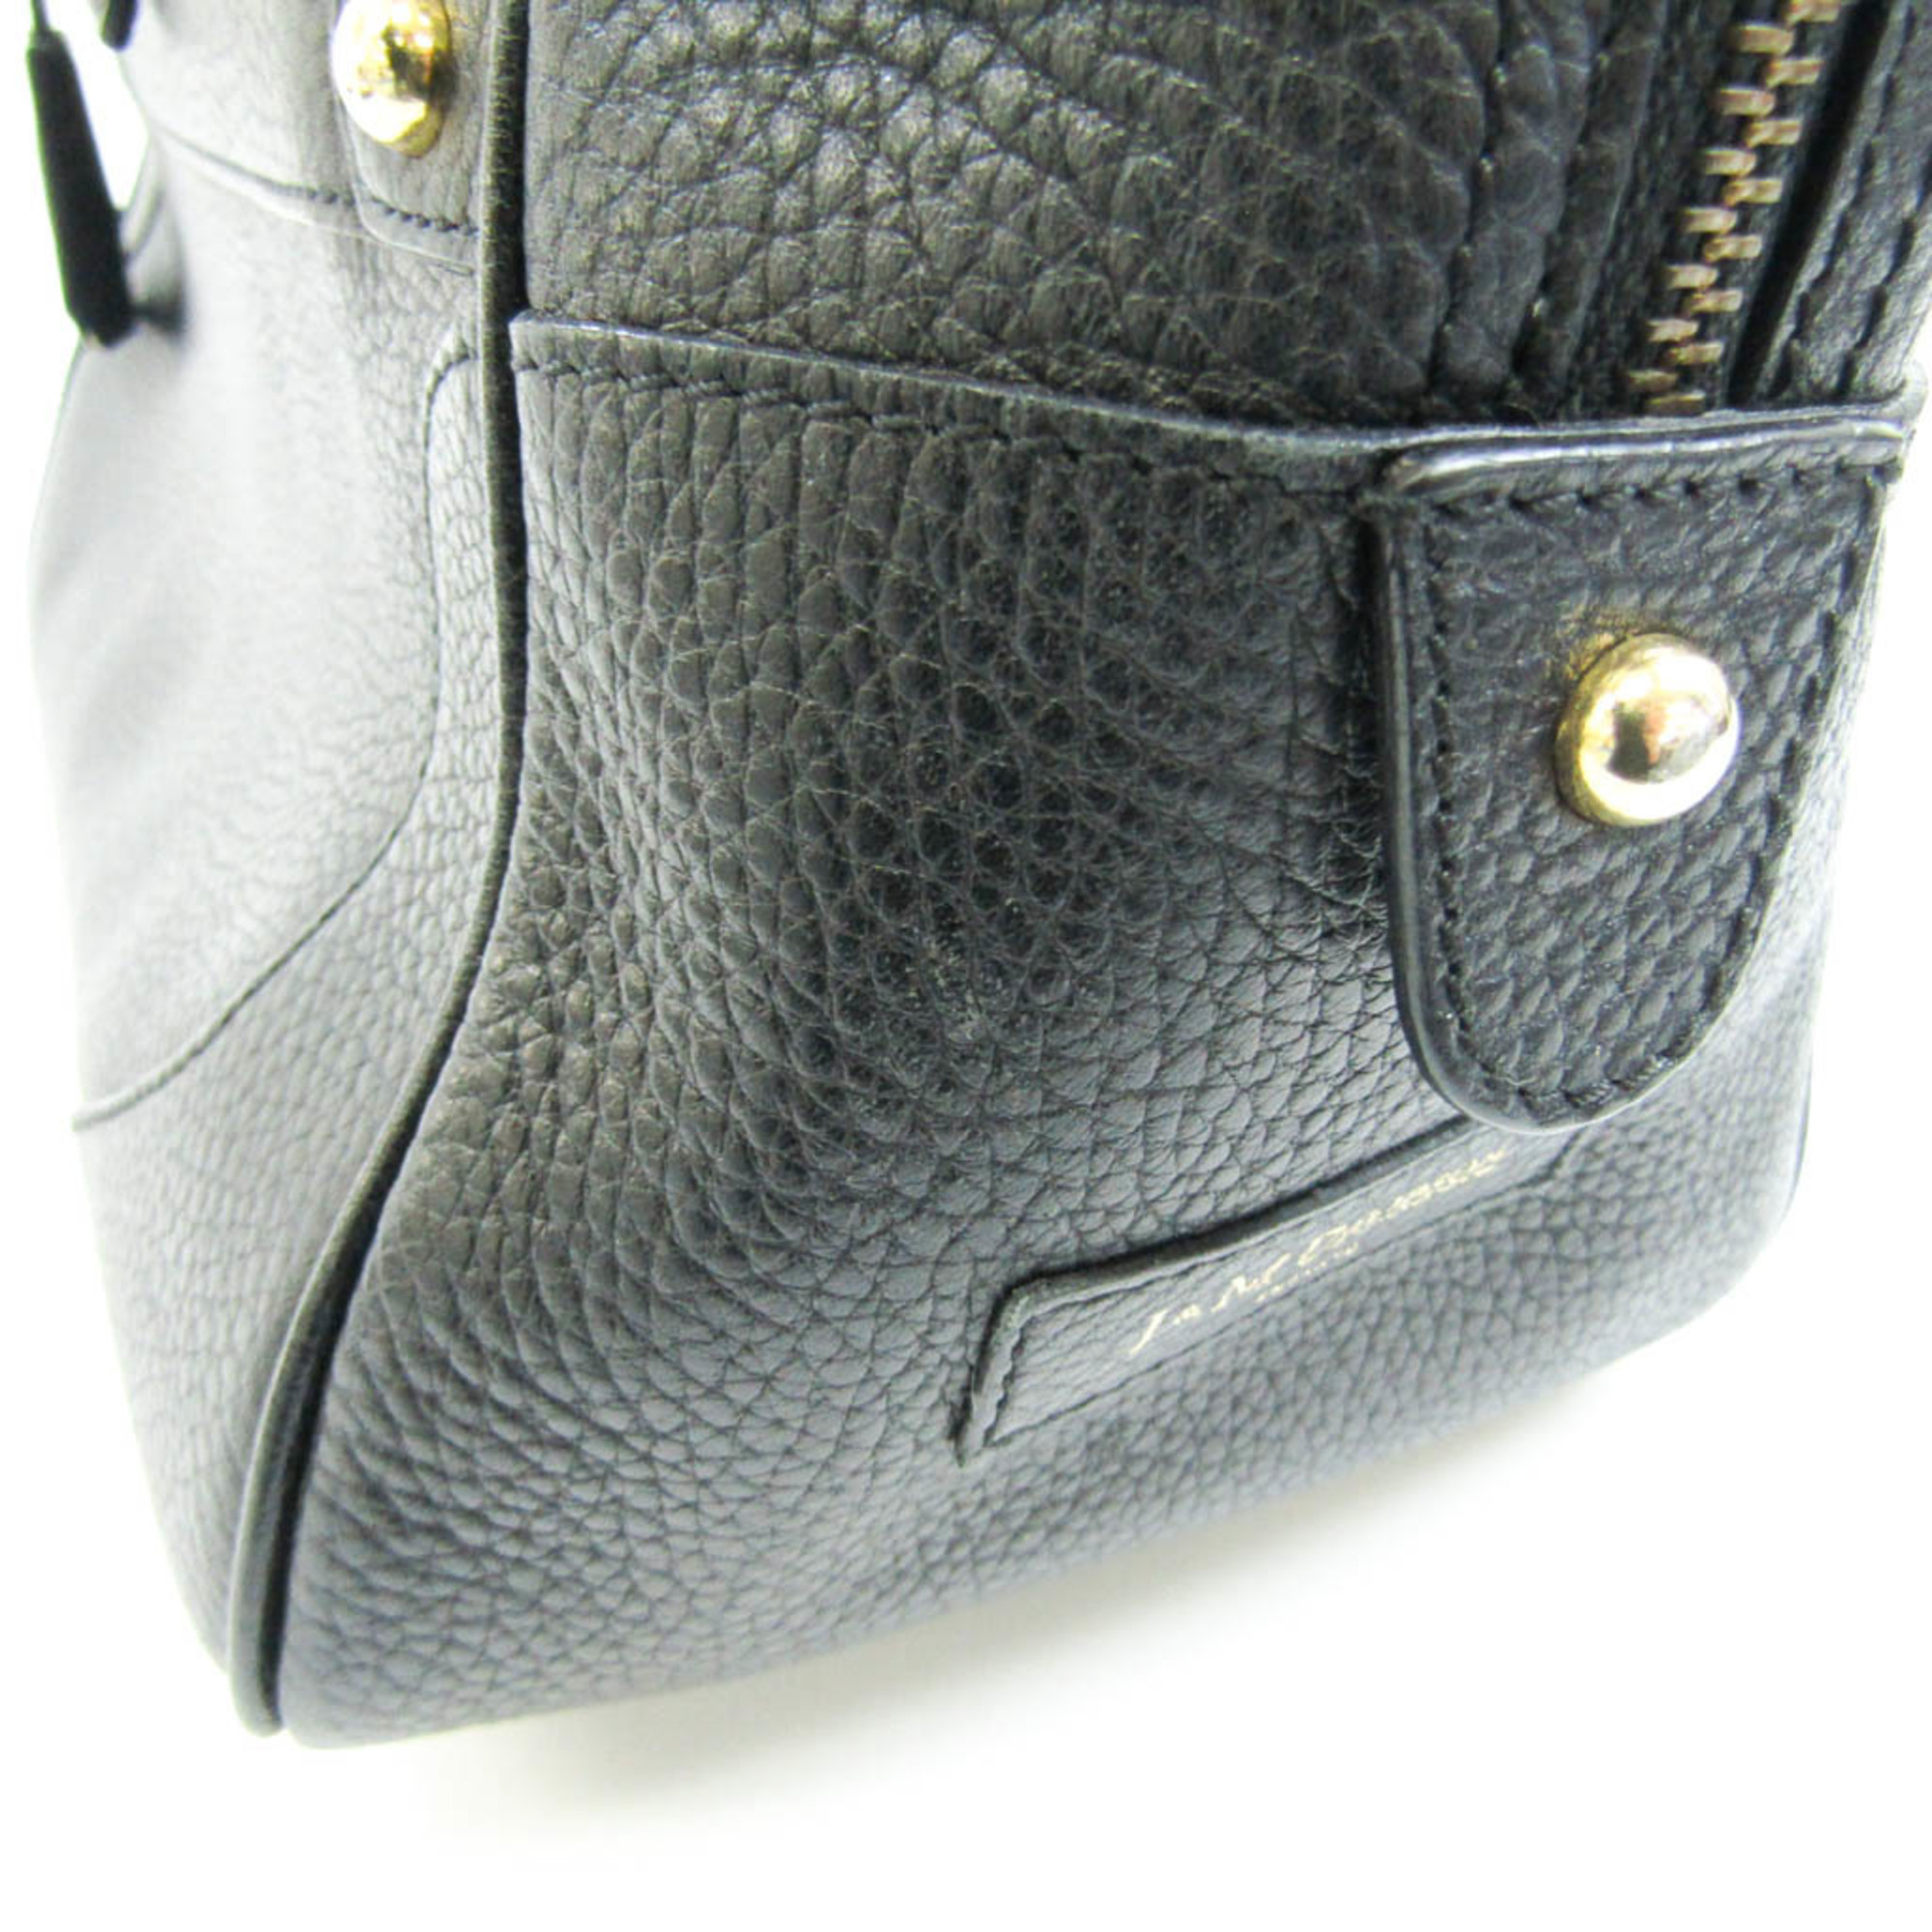 J&M Davidson MIA Women's Leather Boston Bag,Shoulder Bag Black